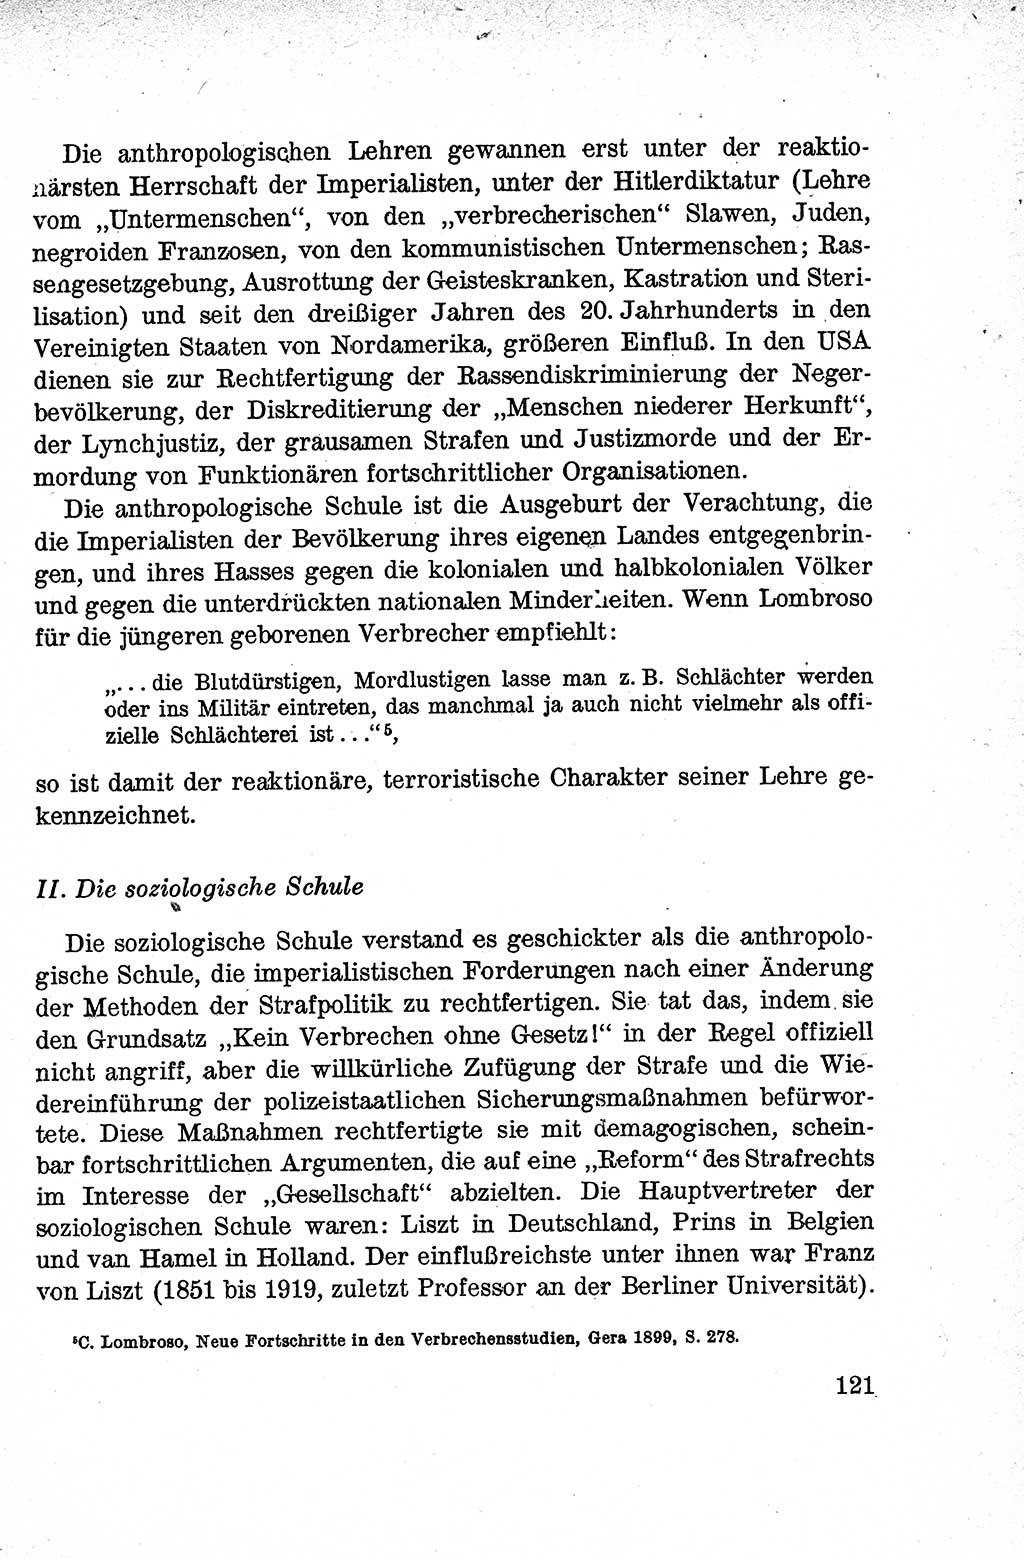 Lehrbuch des Strafrechts der Deutschen Demokratischen Republik (DDR), Allgemeiner Teil 1959, Seite 121 (Lb. Strafr. DDR AT 1959, S. 121)